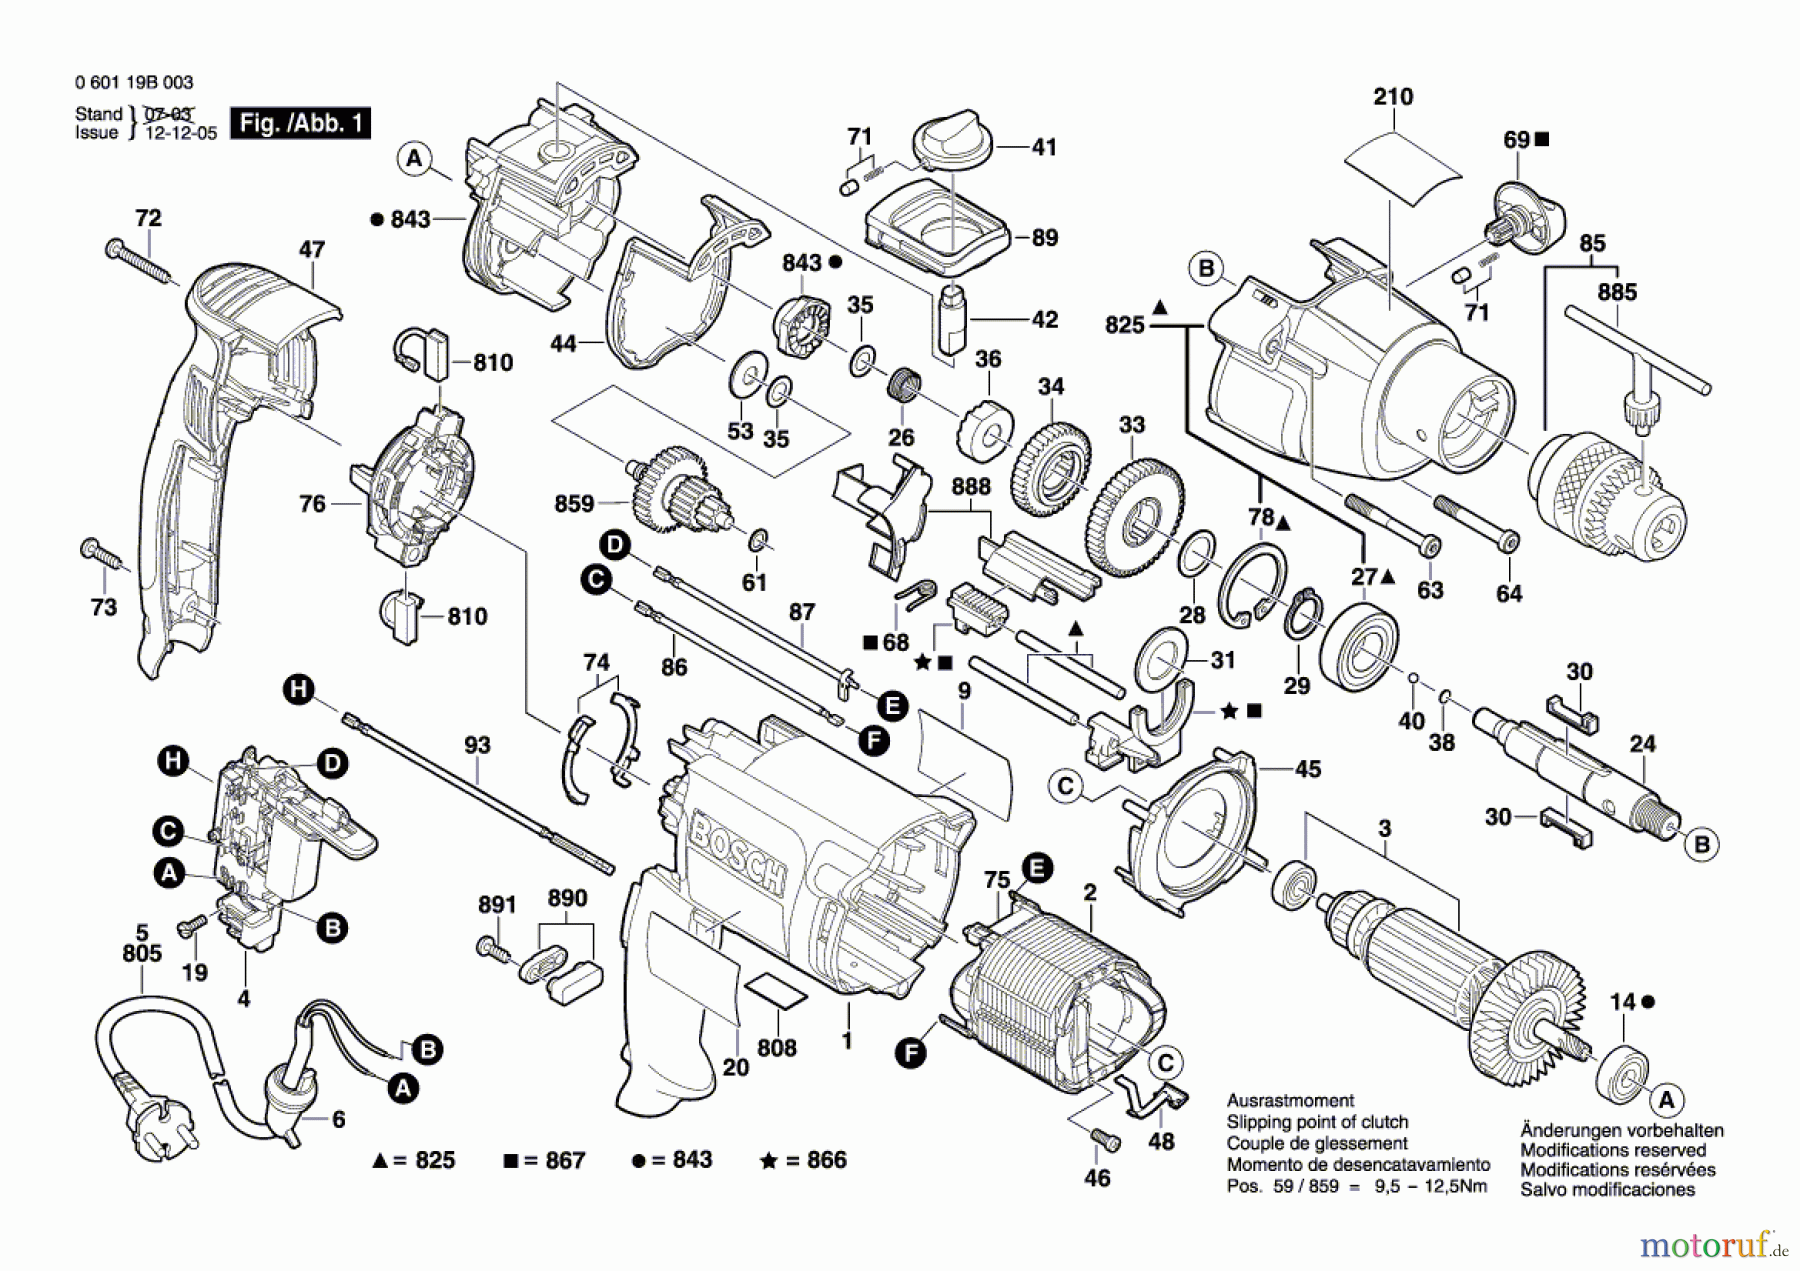  Bosch Werkzeug Schlagbohrmaschine GSB 20-2 Seite 1